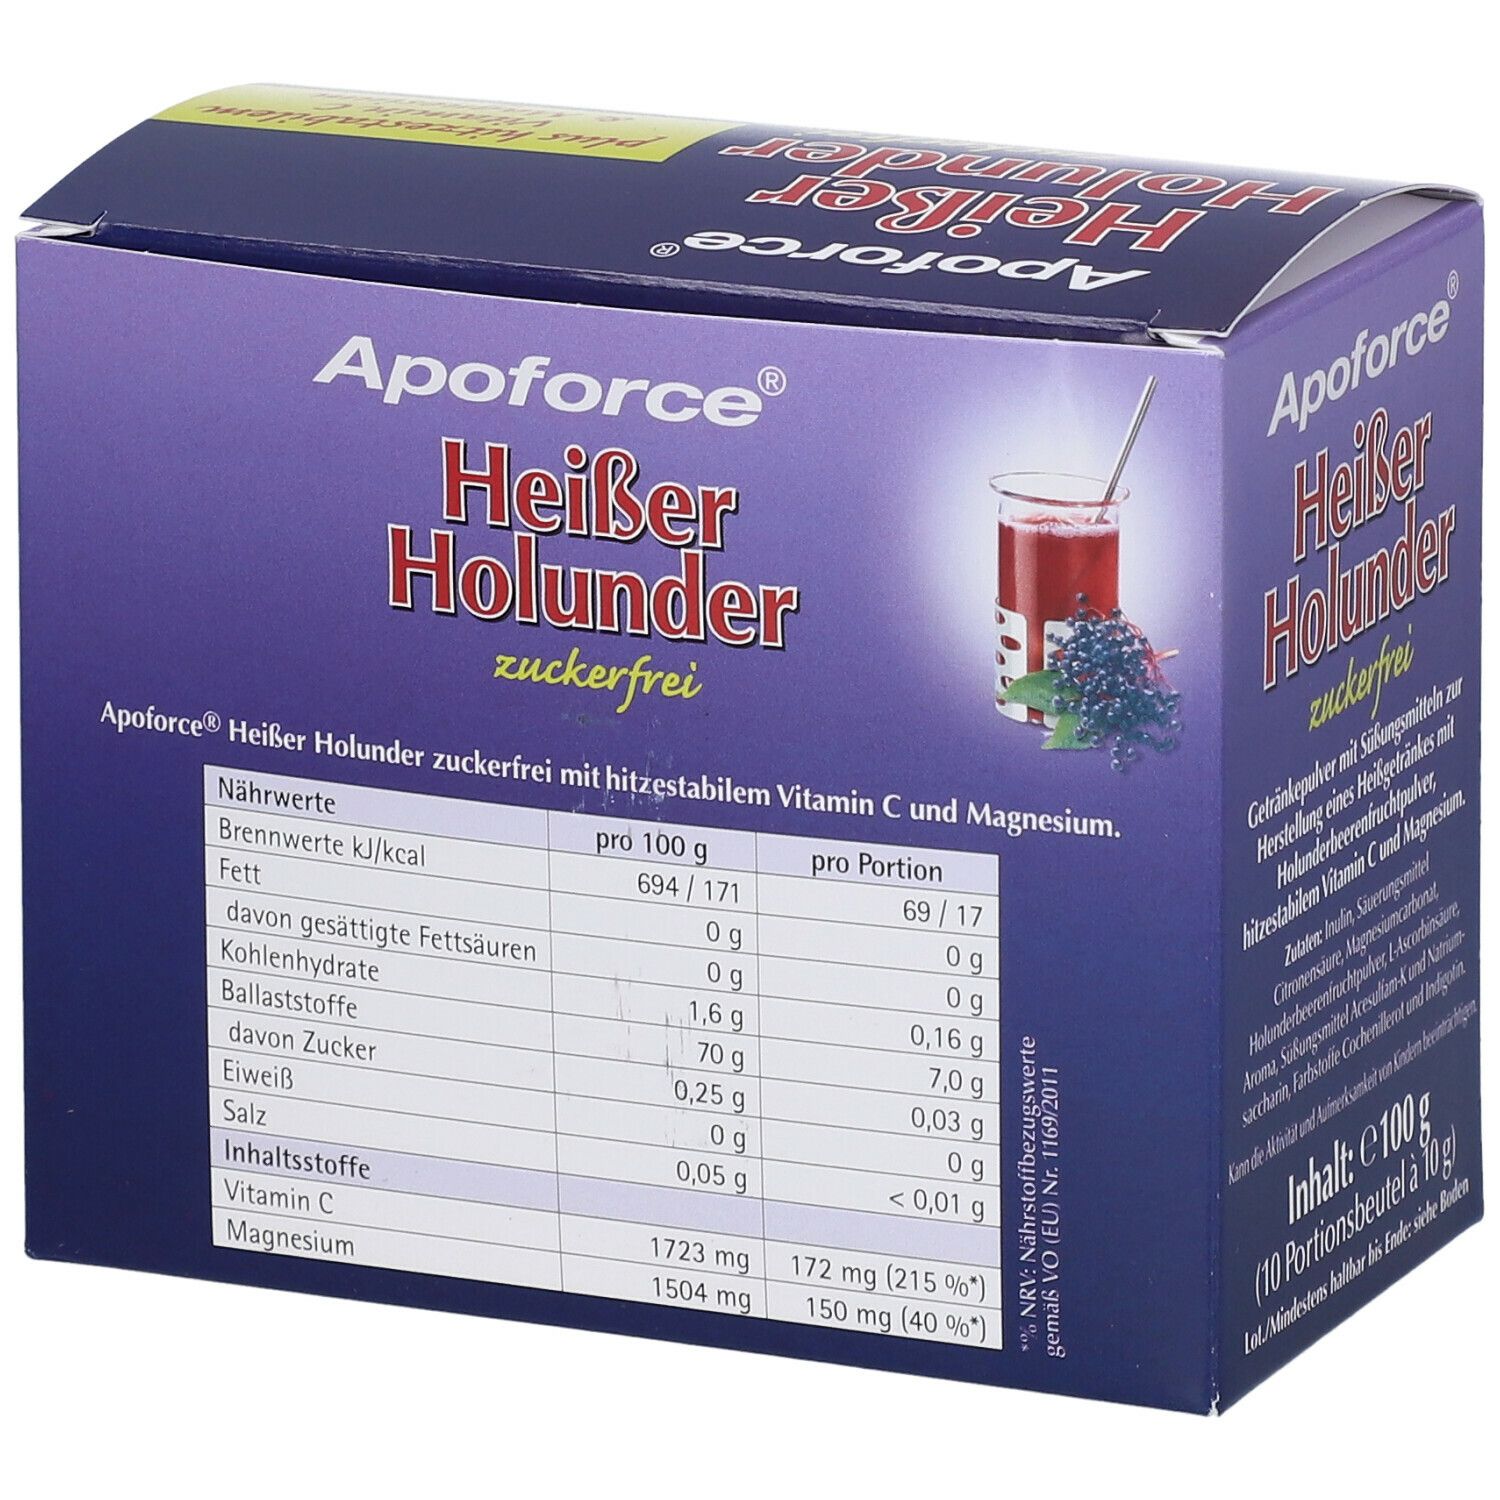 Apoforce® Heißer Holunder zuckerfrei